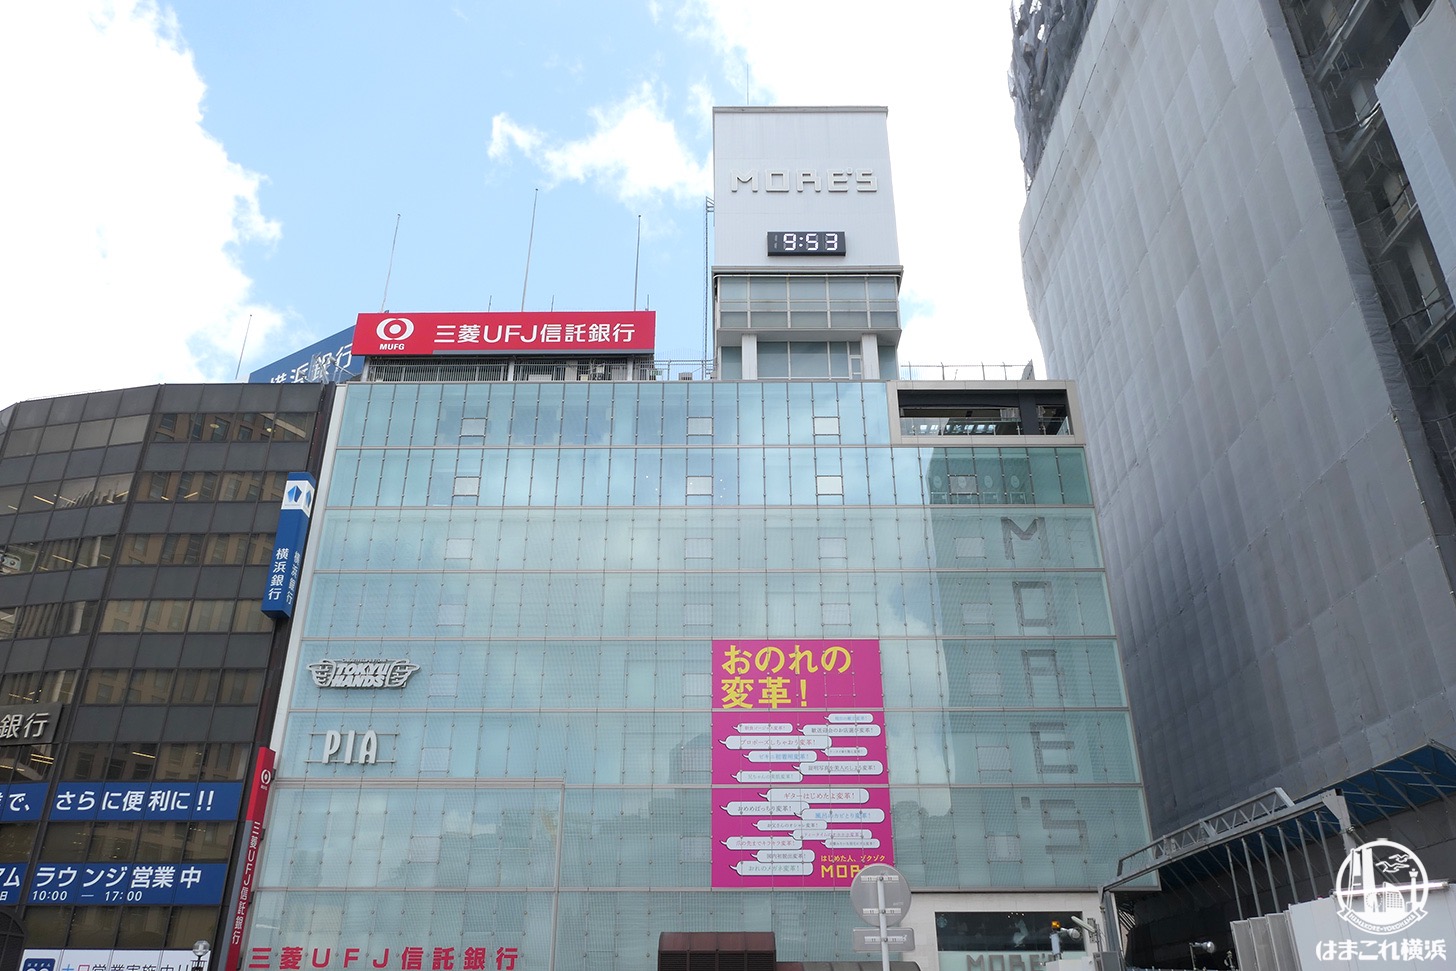 横浜モアーズ 6月1日より物販 飲食フロアの営業再開 はまこれ横浜